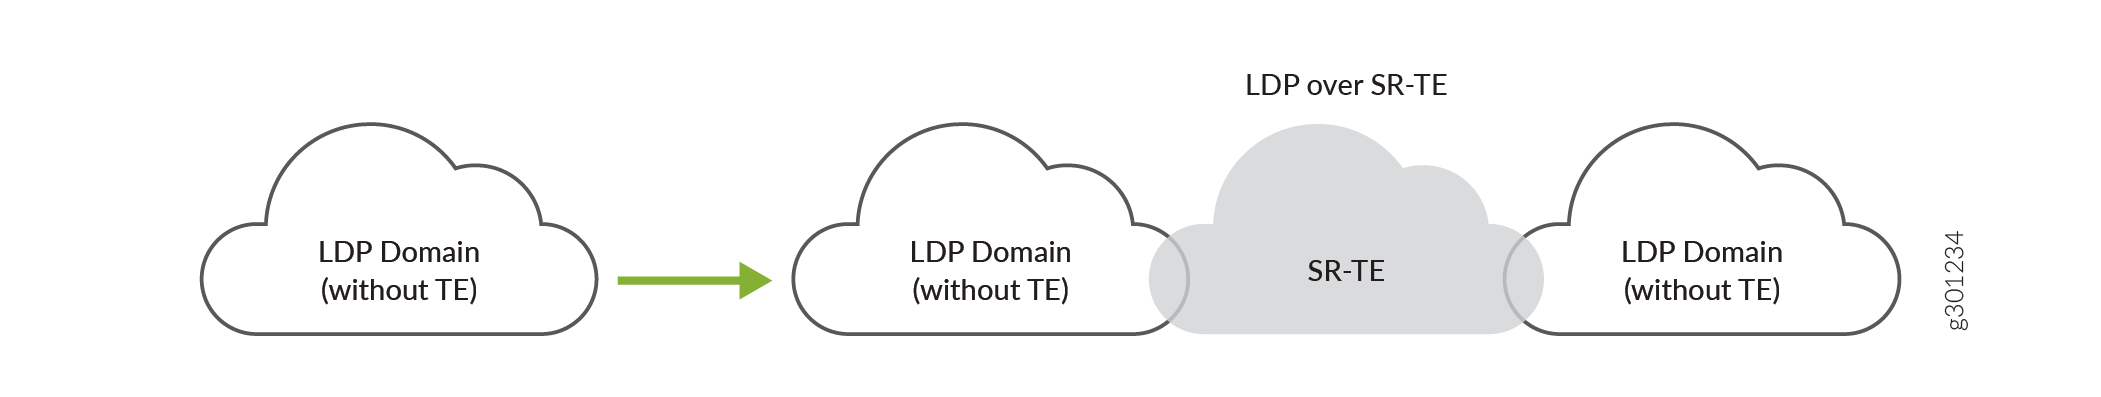 在核心网络中通过 SR-TE 互连 LDP 域